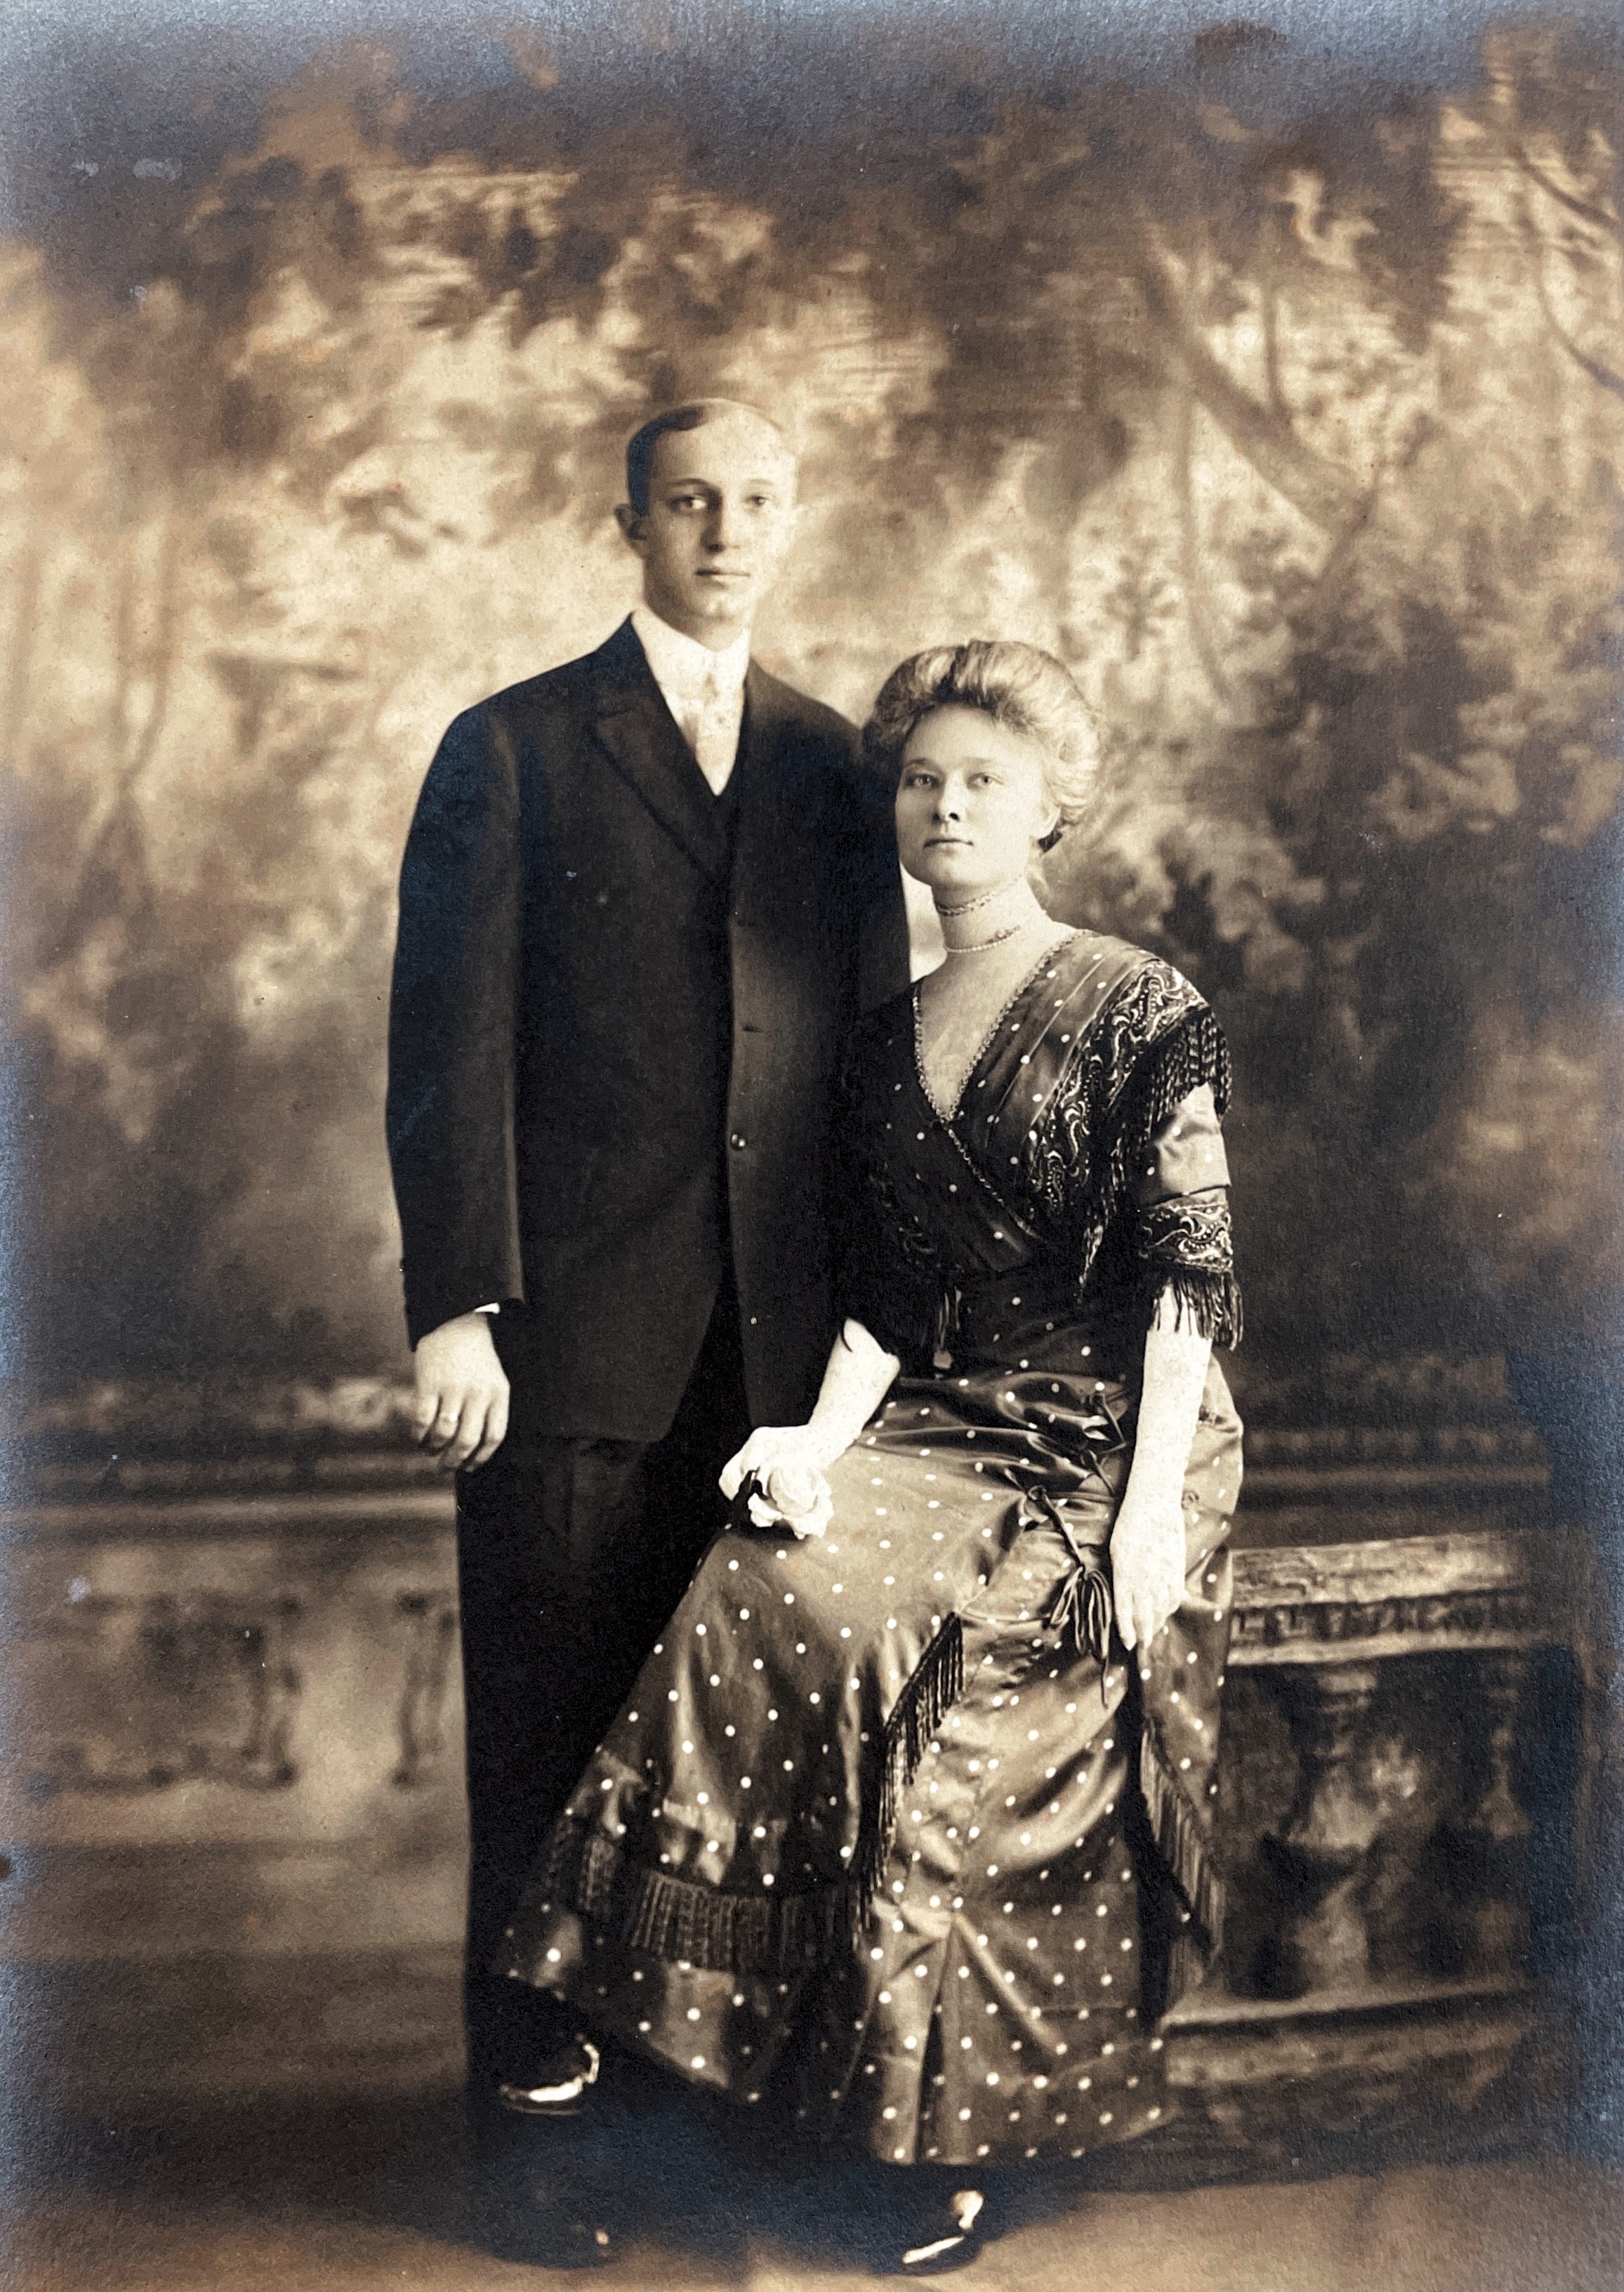 1910, wedding photo John Carl Peters to Gertrude Dora Meta Siem at Lutheran Church of the Ascencion, Savannah, Ga